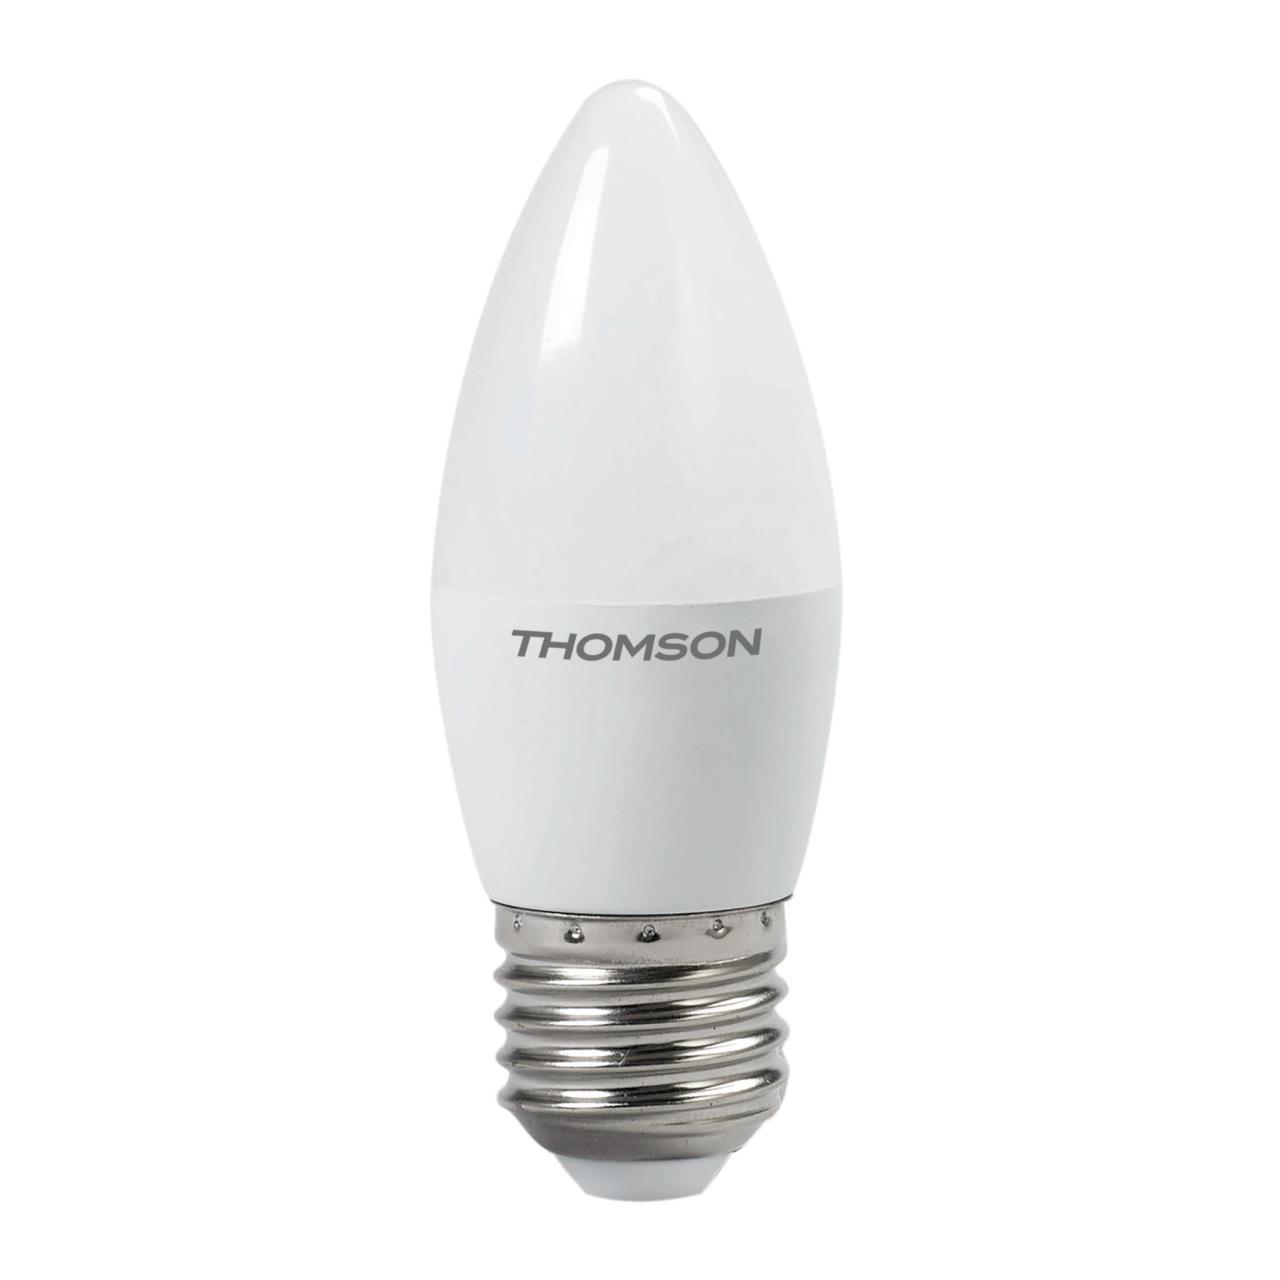 91253113 Лампа светодиодная TH-B2023 E27 54 В 10 Вт свеча матовая 800 Лм теплый белый свет STLM-0522502 THOMSON